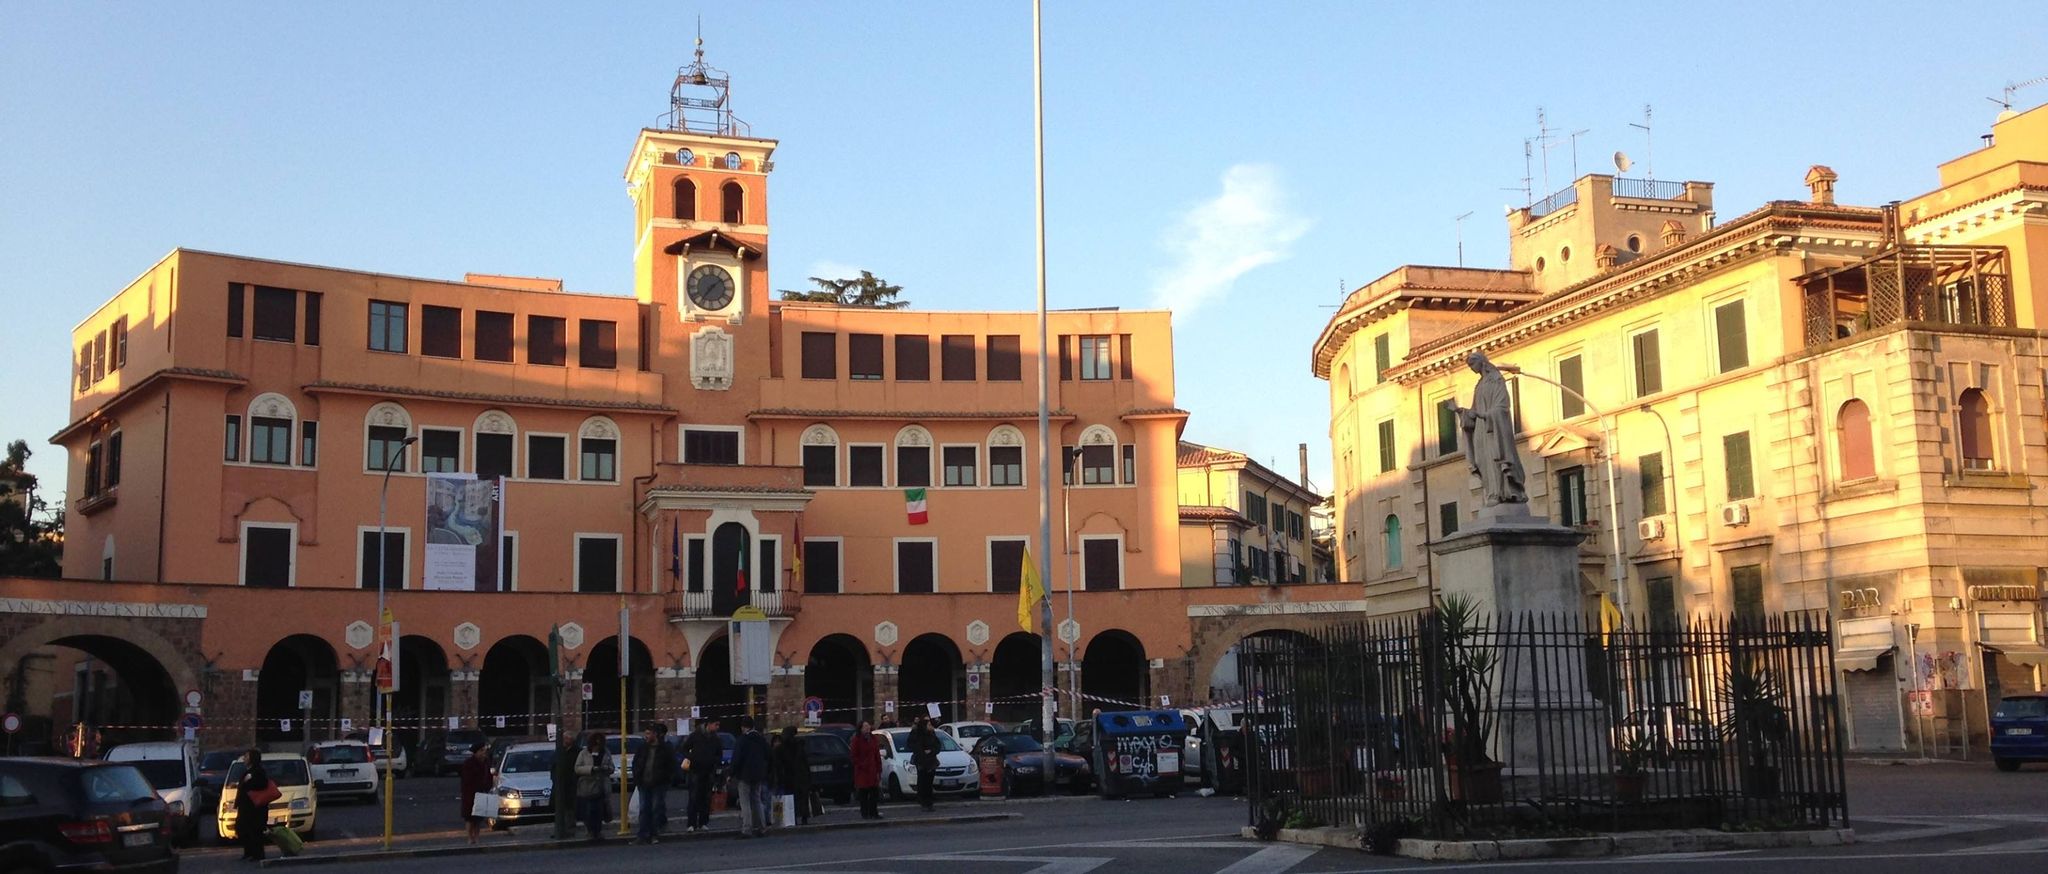 La sede del III Municipio a piazza Sempione